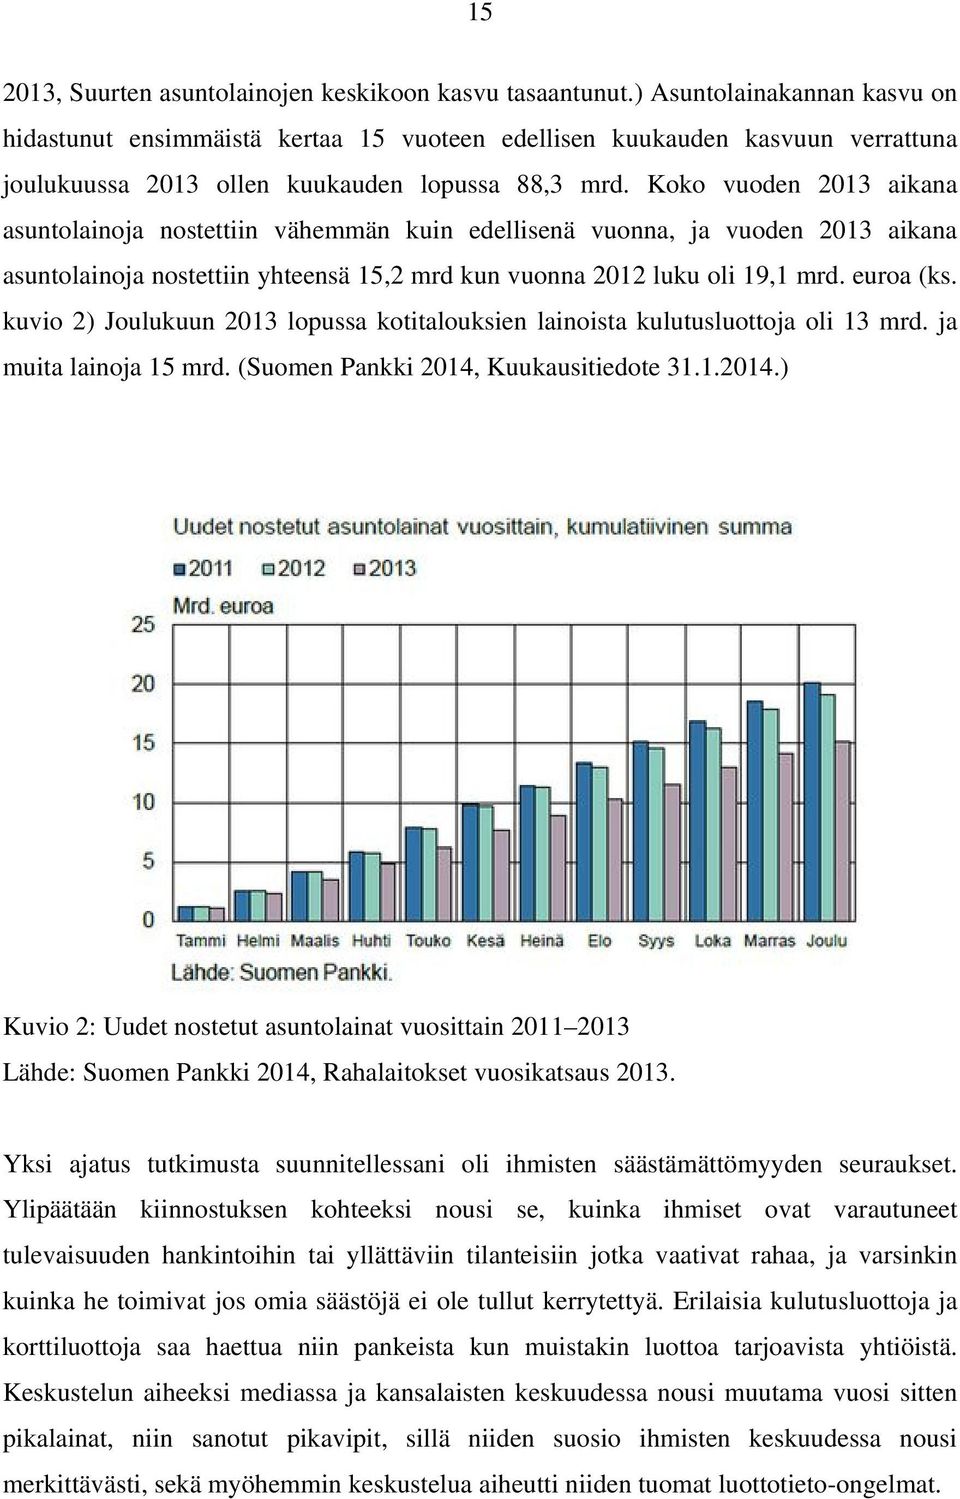 Koko vuoden 2013 aikana asuntolainoja nostettiin vähemmän kuin edellisenä vuonna, ja vuoden 2013 aikana asuntolainoja nostettiin yhteensä 15,2 mrd kun vuonna 2012 luku oli 19,1 mrd. euroa (ks.